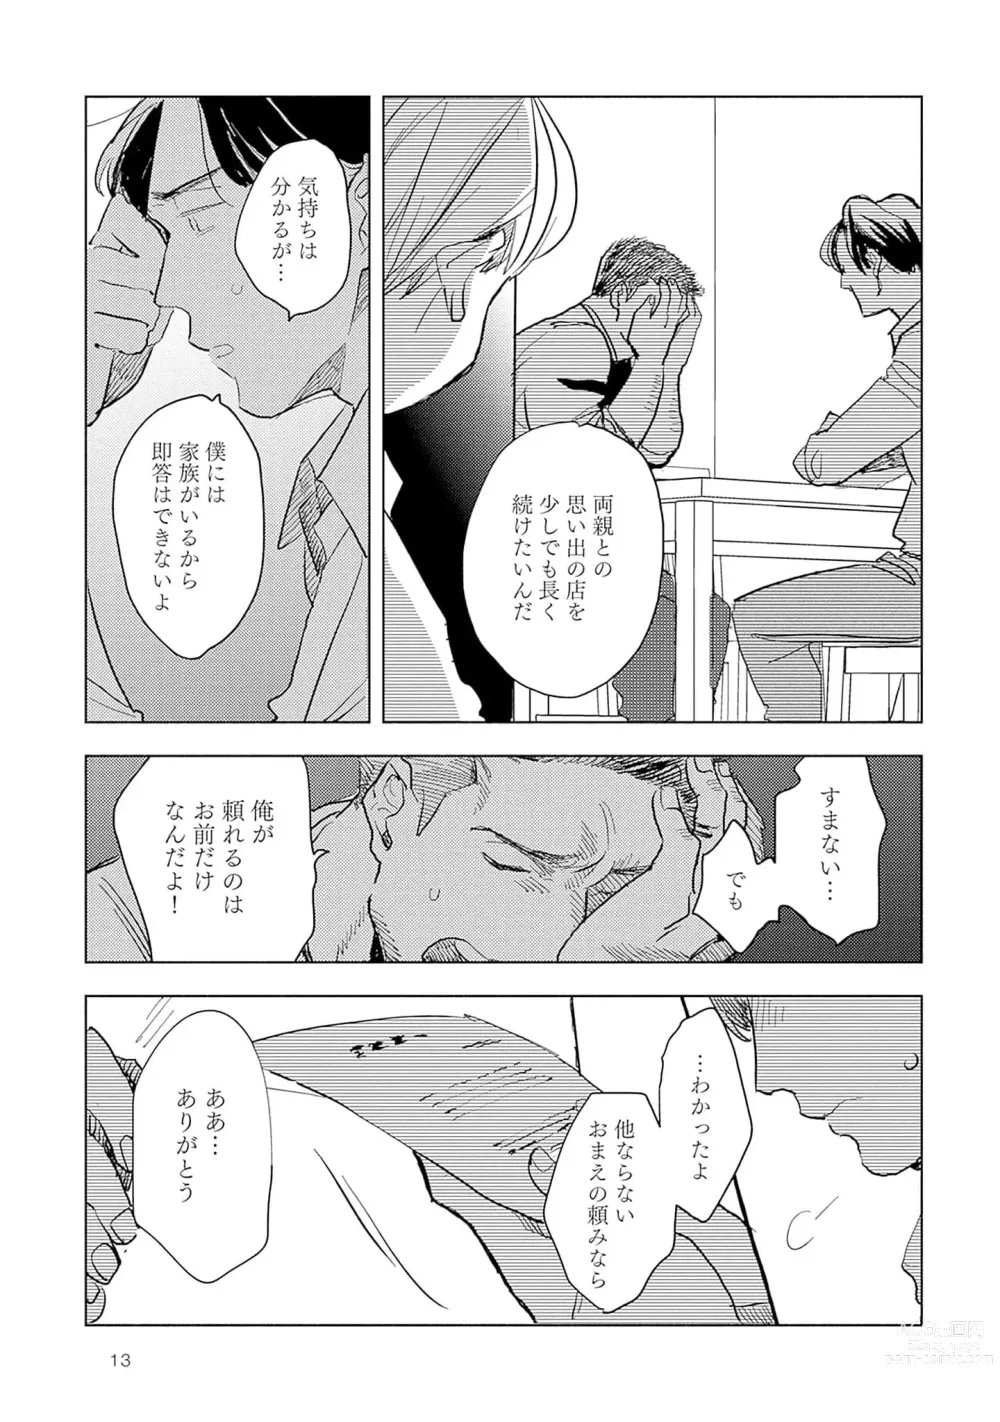 Page 15 of manga Strawberry na Days 2